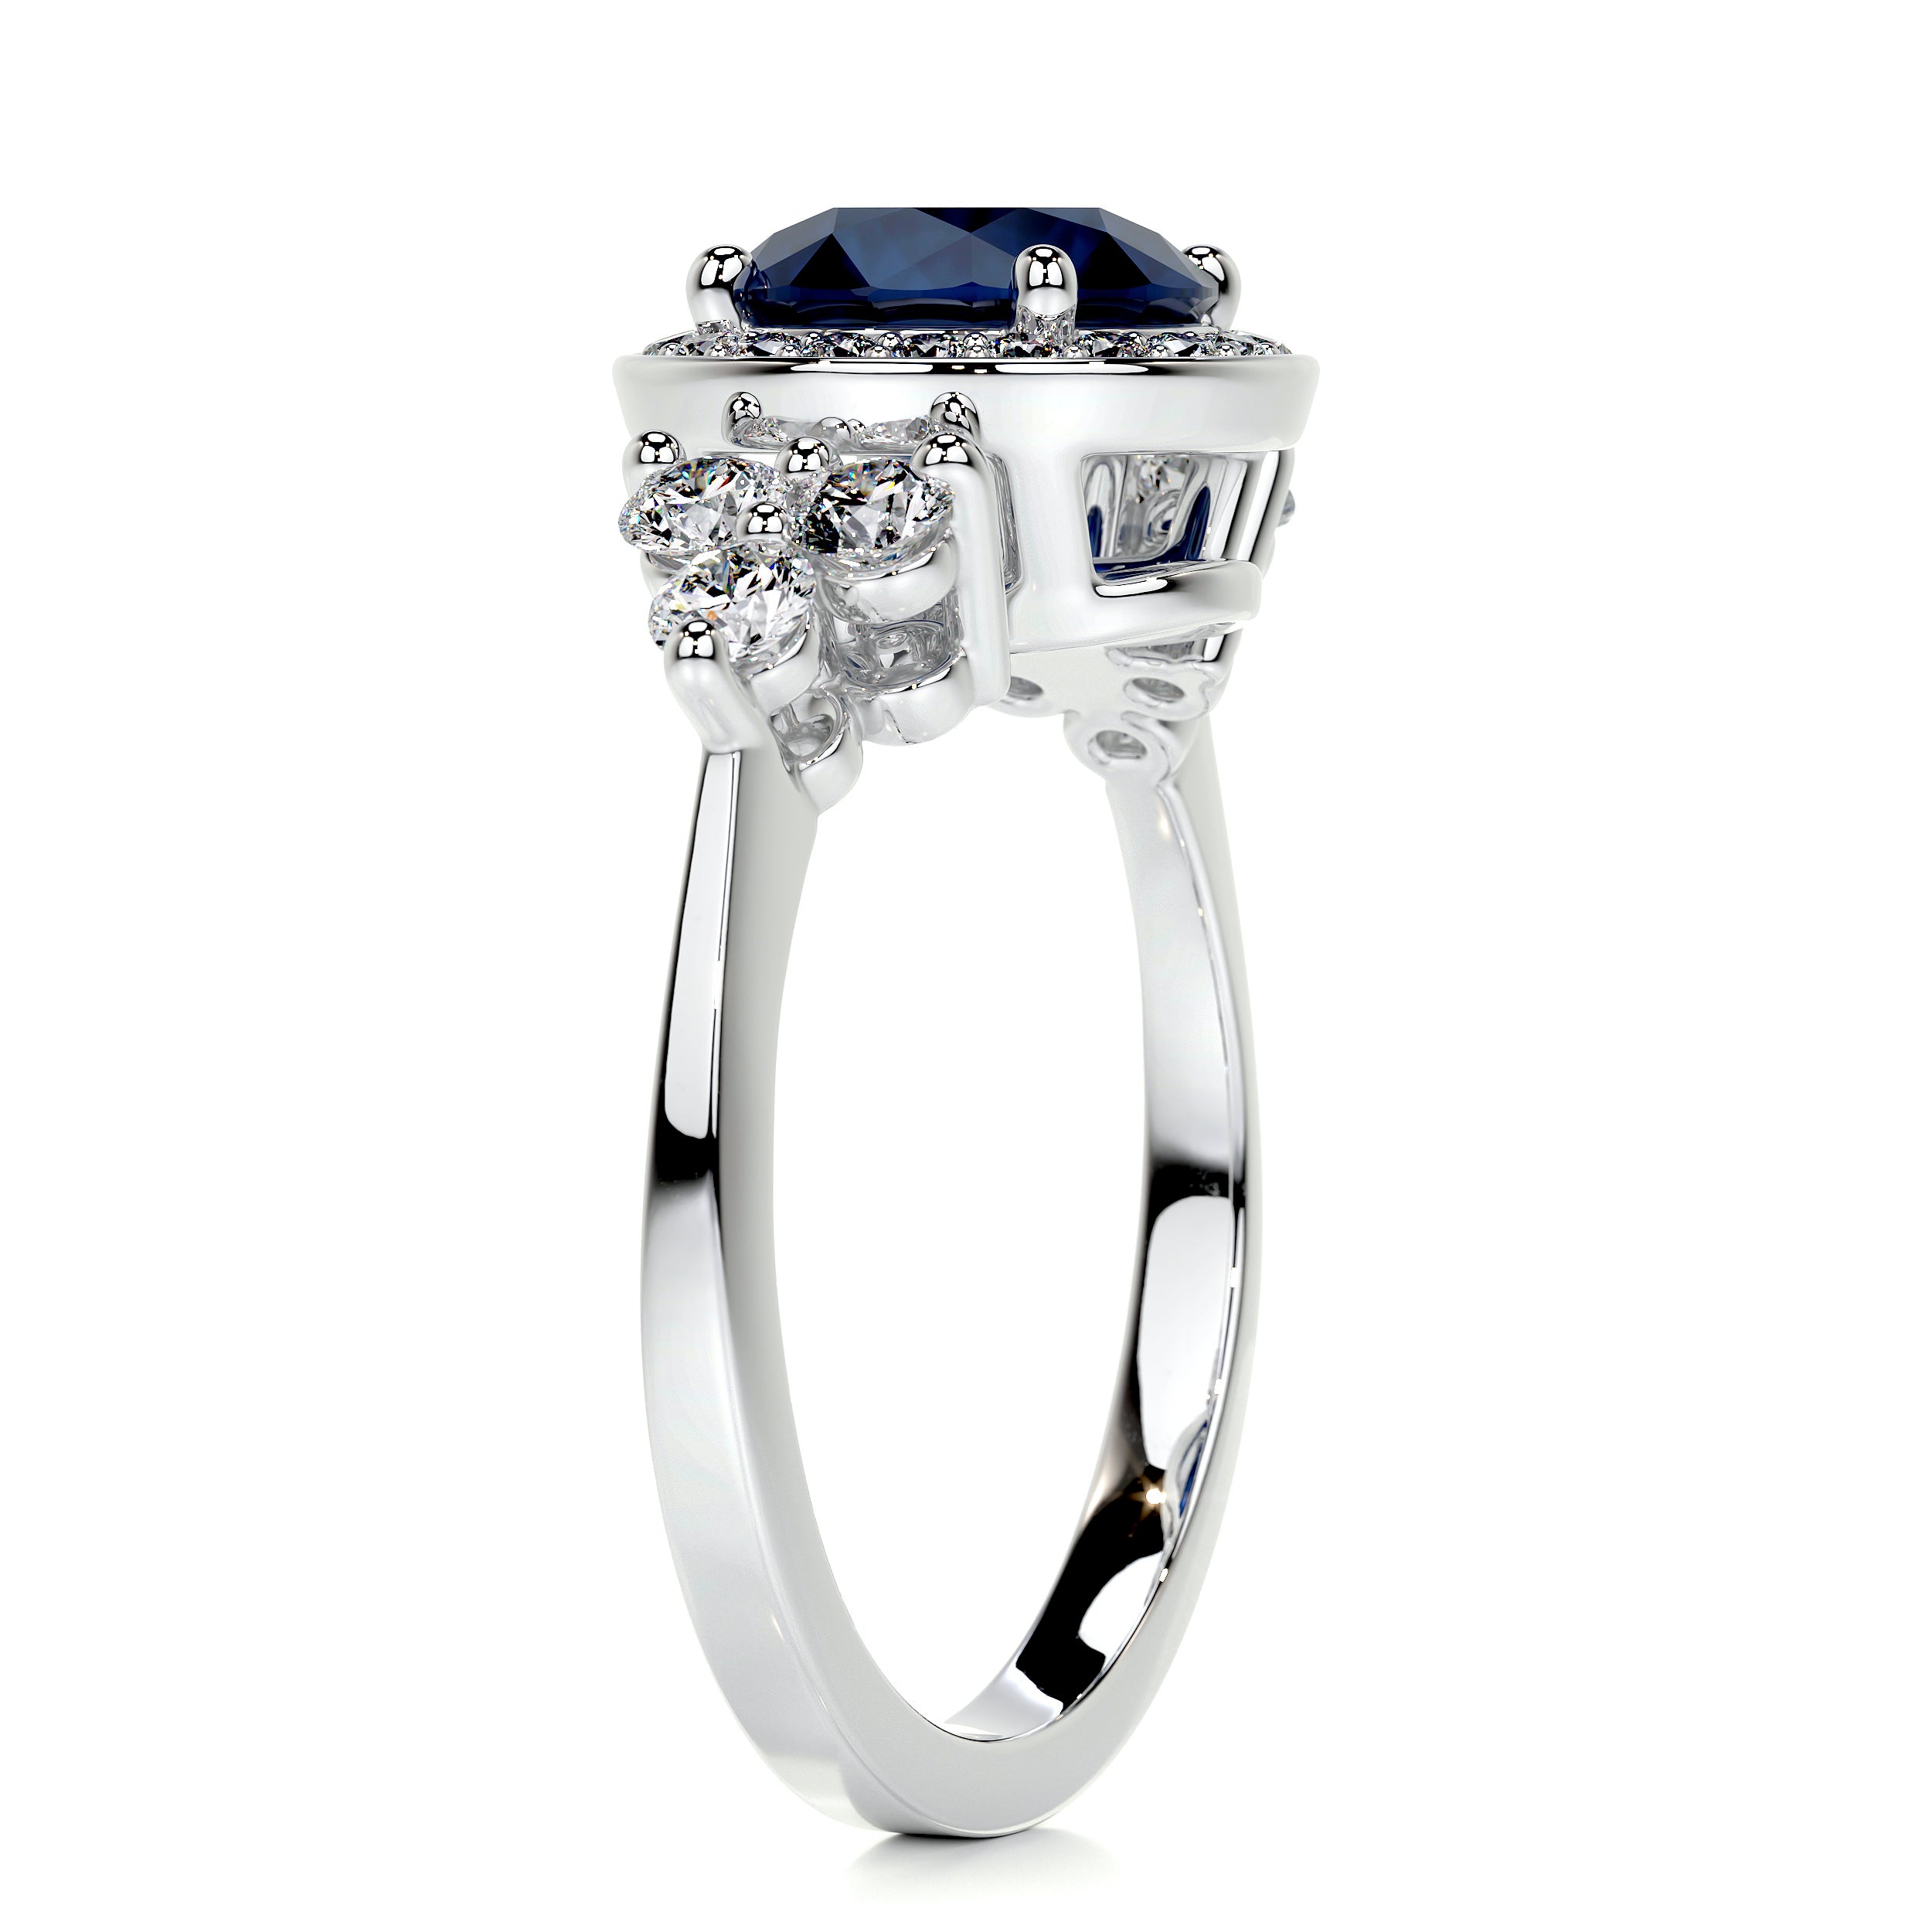 Ivy Gemstone & Diamonds Ring   (2 Carat) -14K White Gold